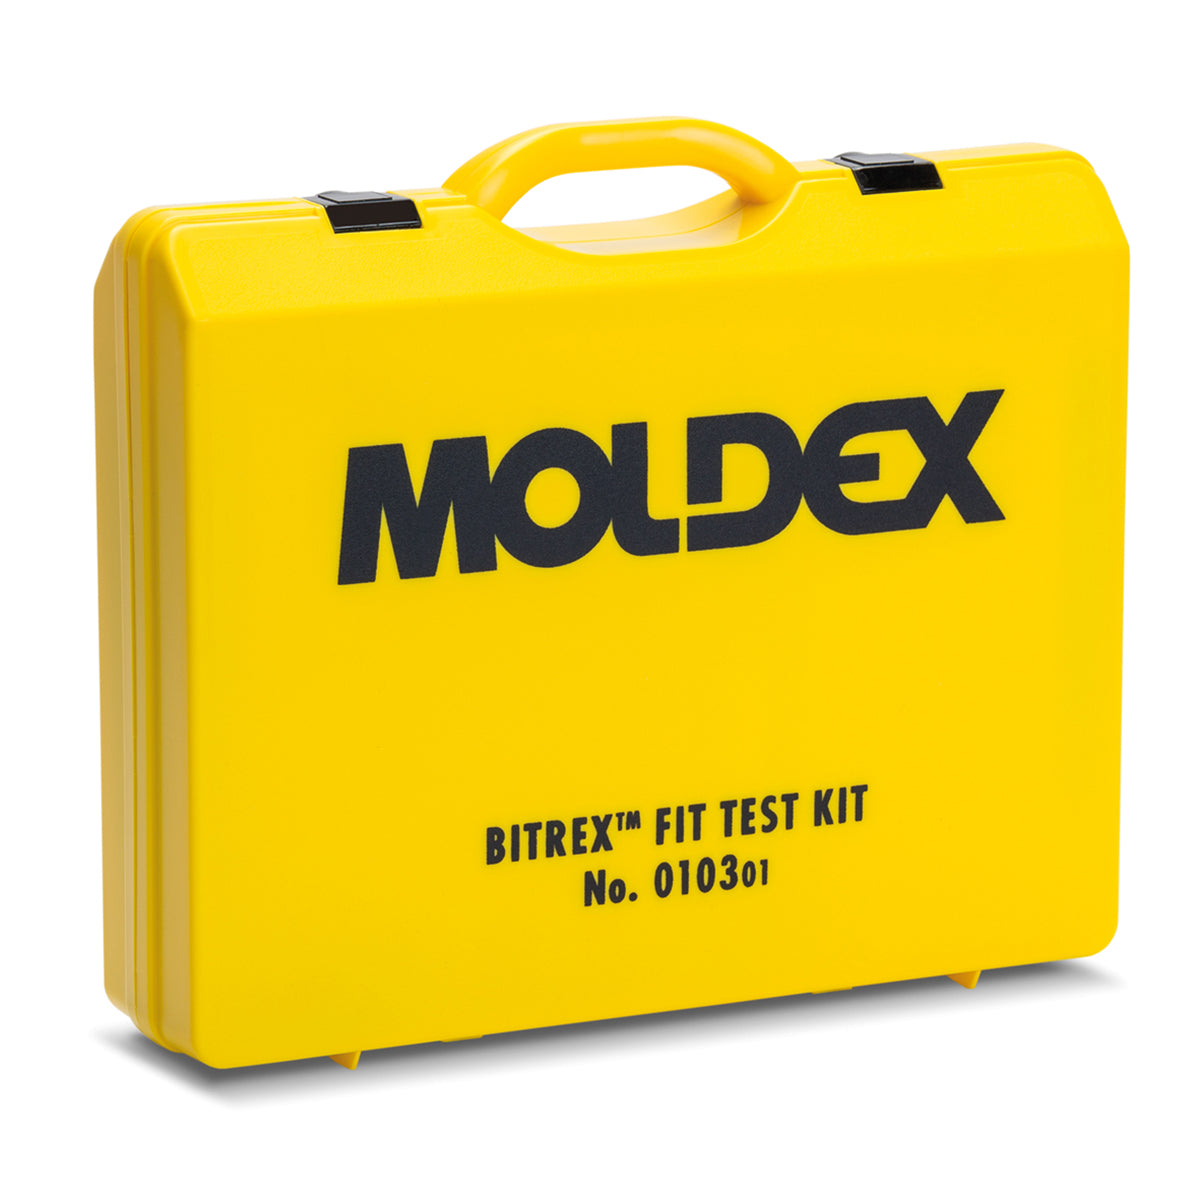 Moldex 0103 Bitrex Face Fit Testing Kit